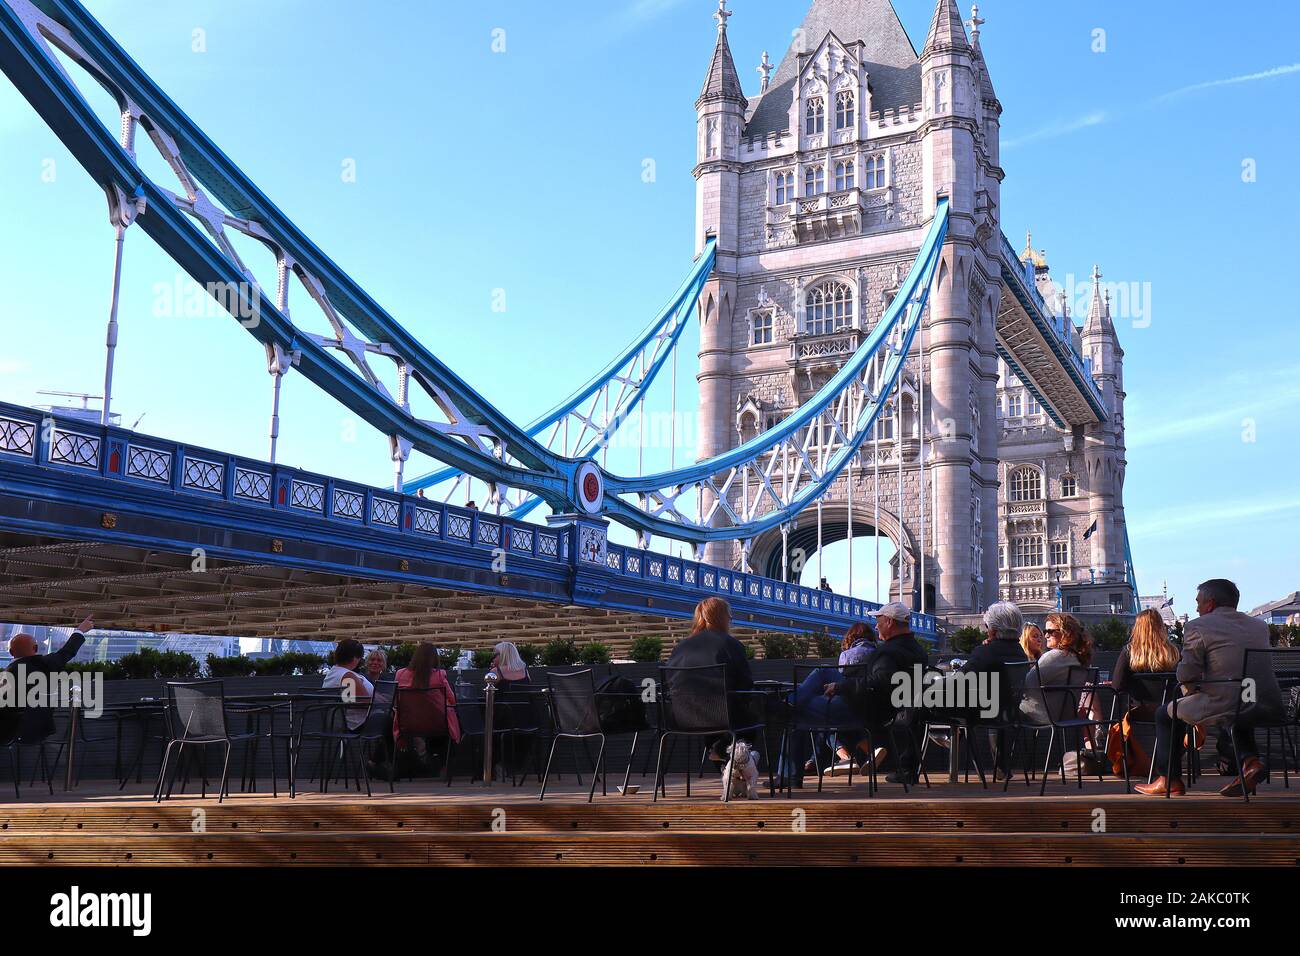 Menschen auf Stühlen entspannen und genießen den Blick auf die Tower Bridge in London sitzt Stockfoto